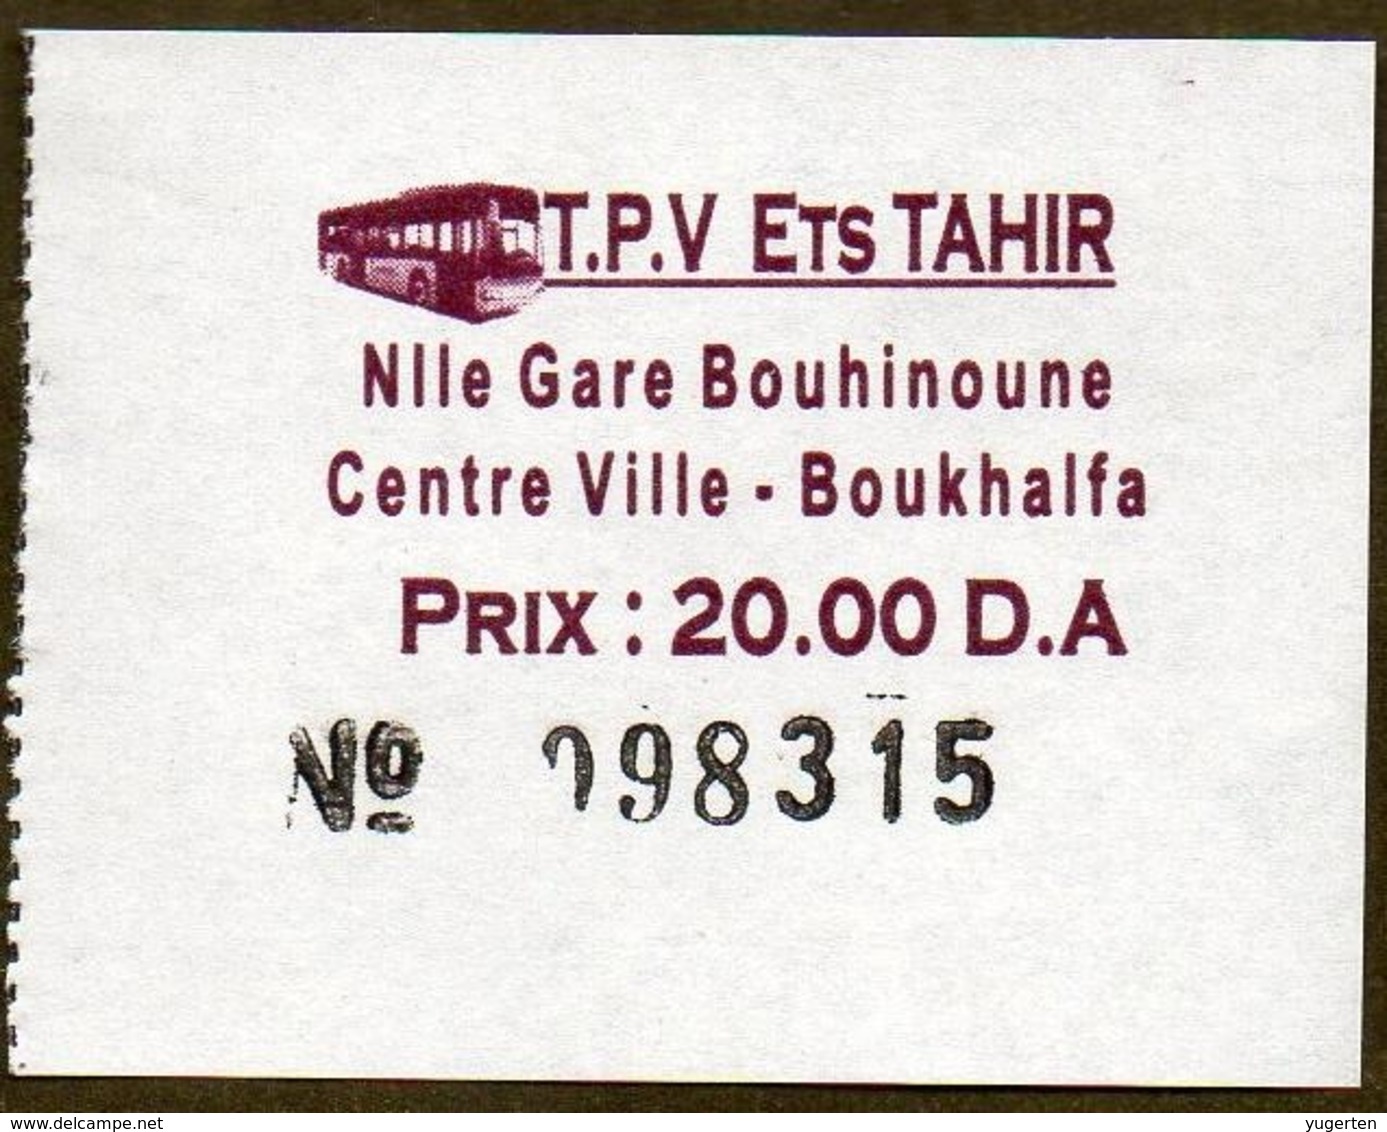 Algeria Ticket Bus Transport Tizi Ouzou - Gare - Centre Ville - Billete De Autobús Biglietto Dell'autobus 2018 - World